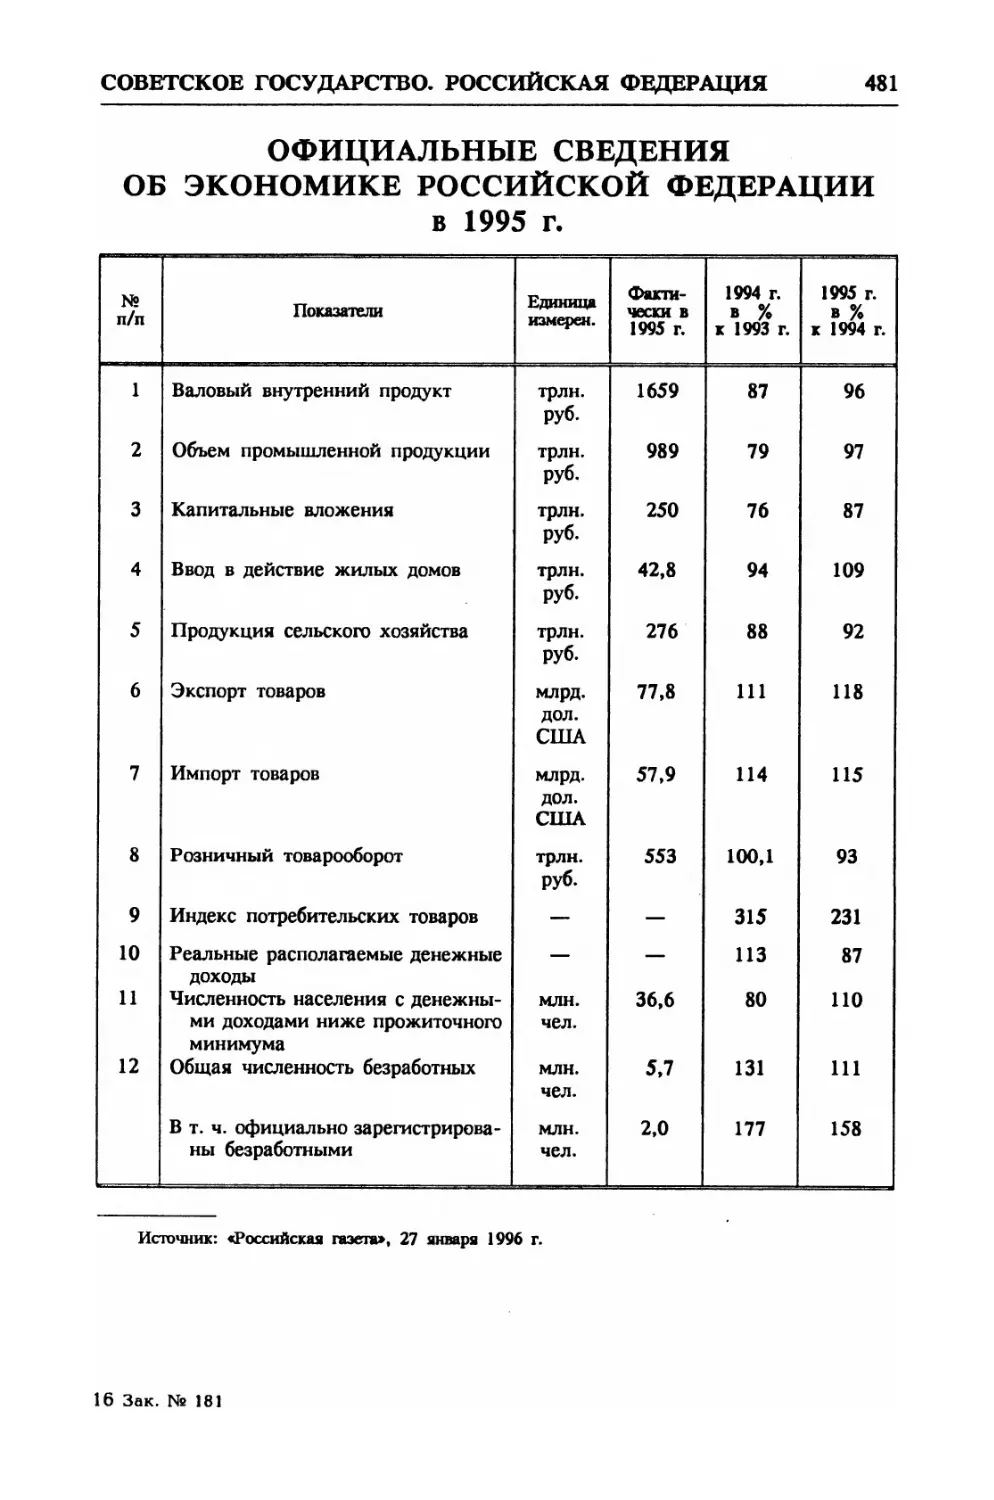 Официальные сведения об экономике Российской Федерации в 1995 г